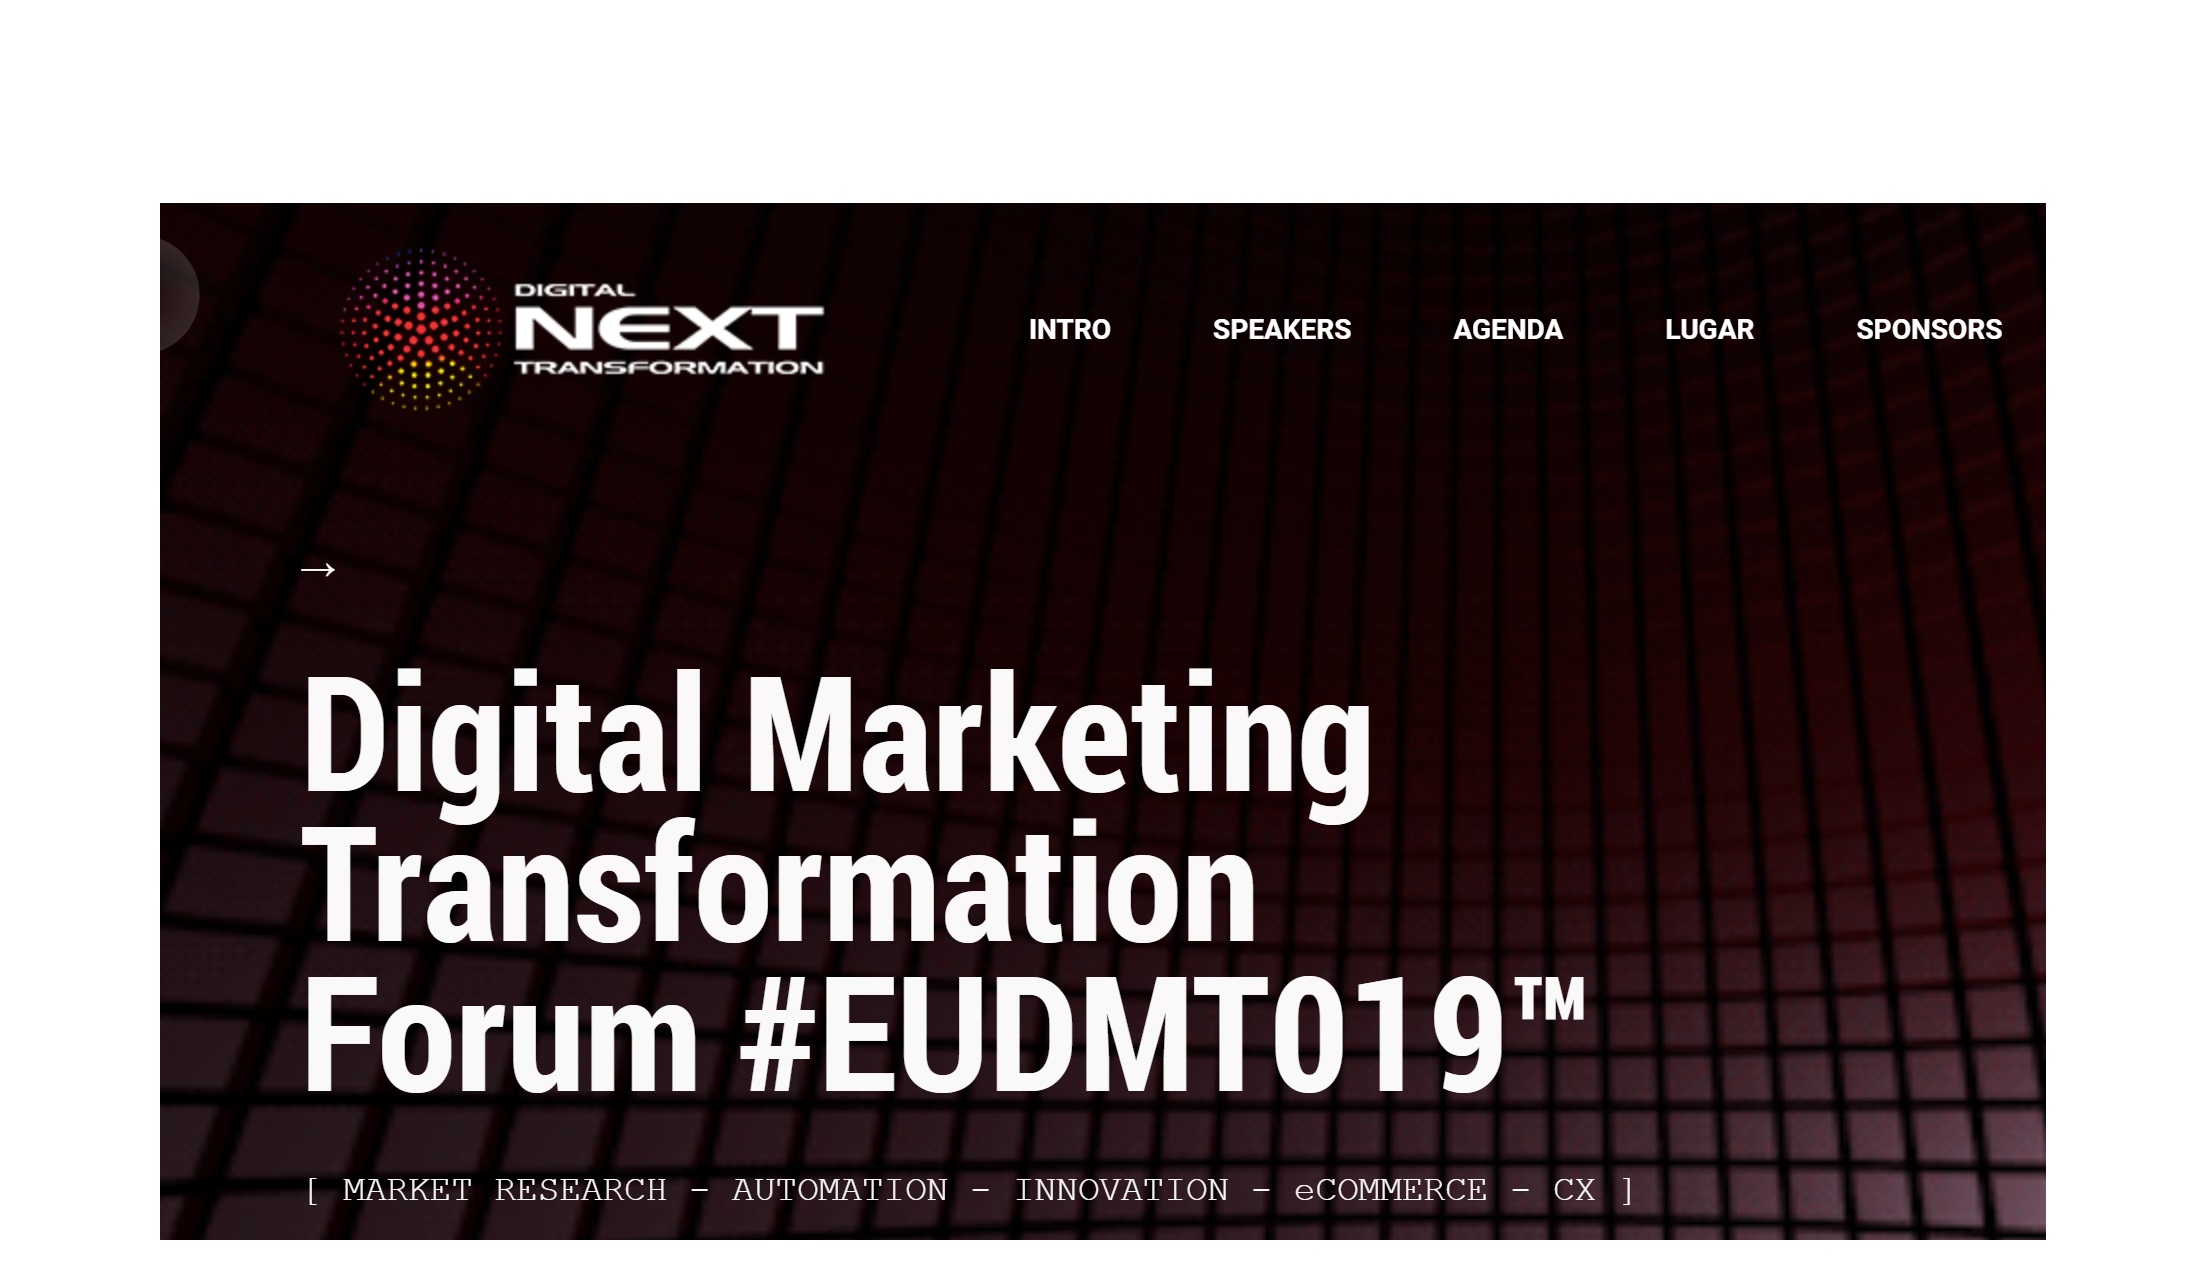 digital next, transformatiion,#EUDMT019,programapublicidad